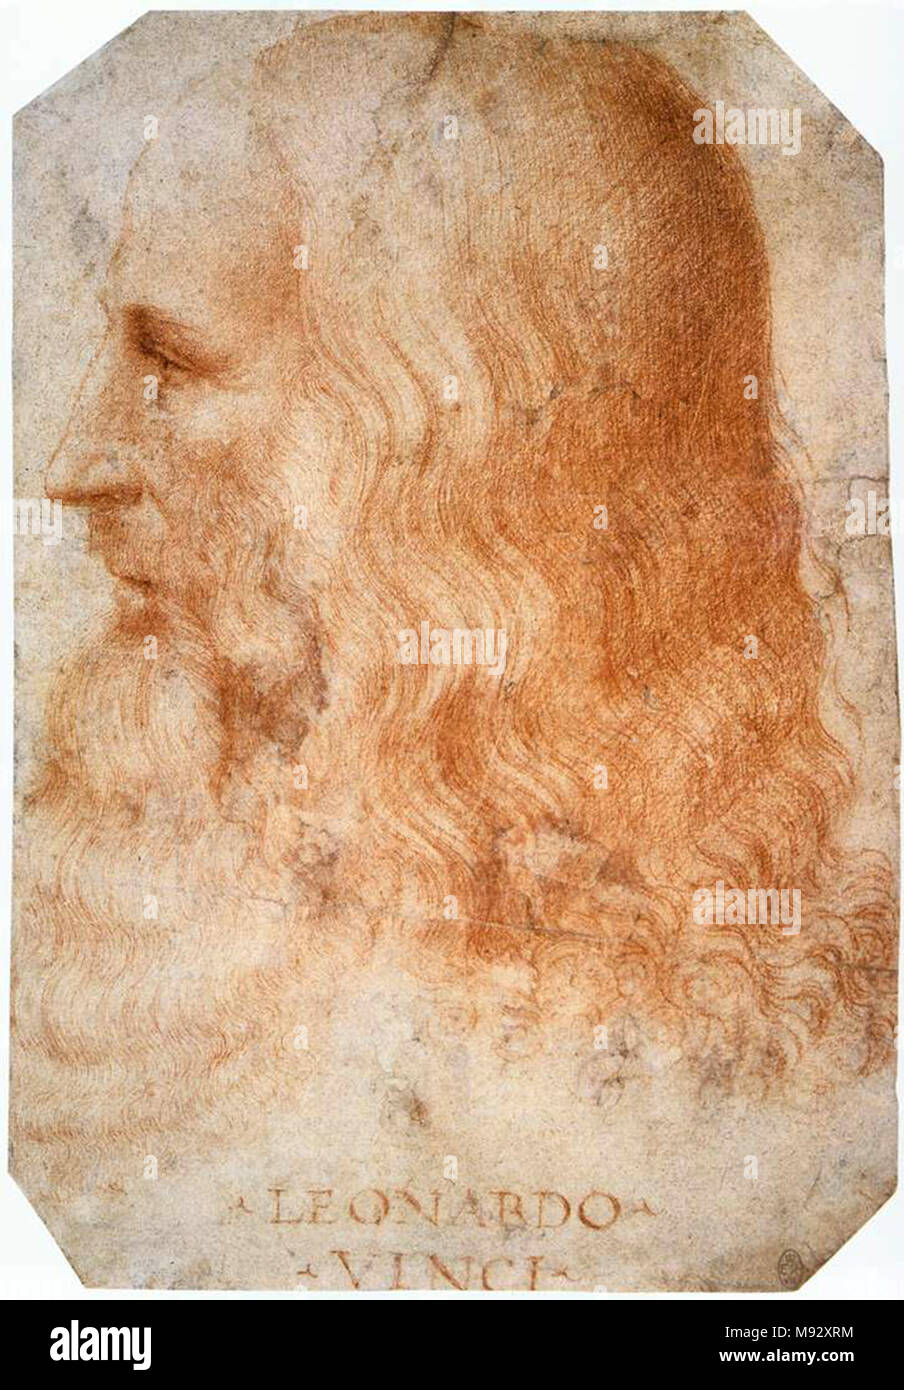 Leonardo da Vinci, Leonardo di ser Piero da Vinci (1452 - 1519), el polímata renacentista italiano Foto de stock